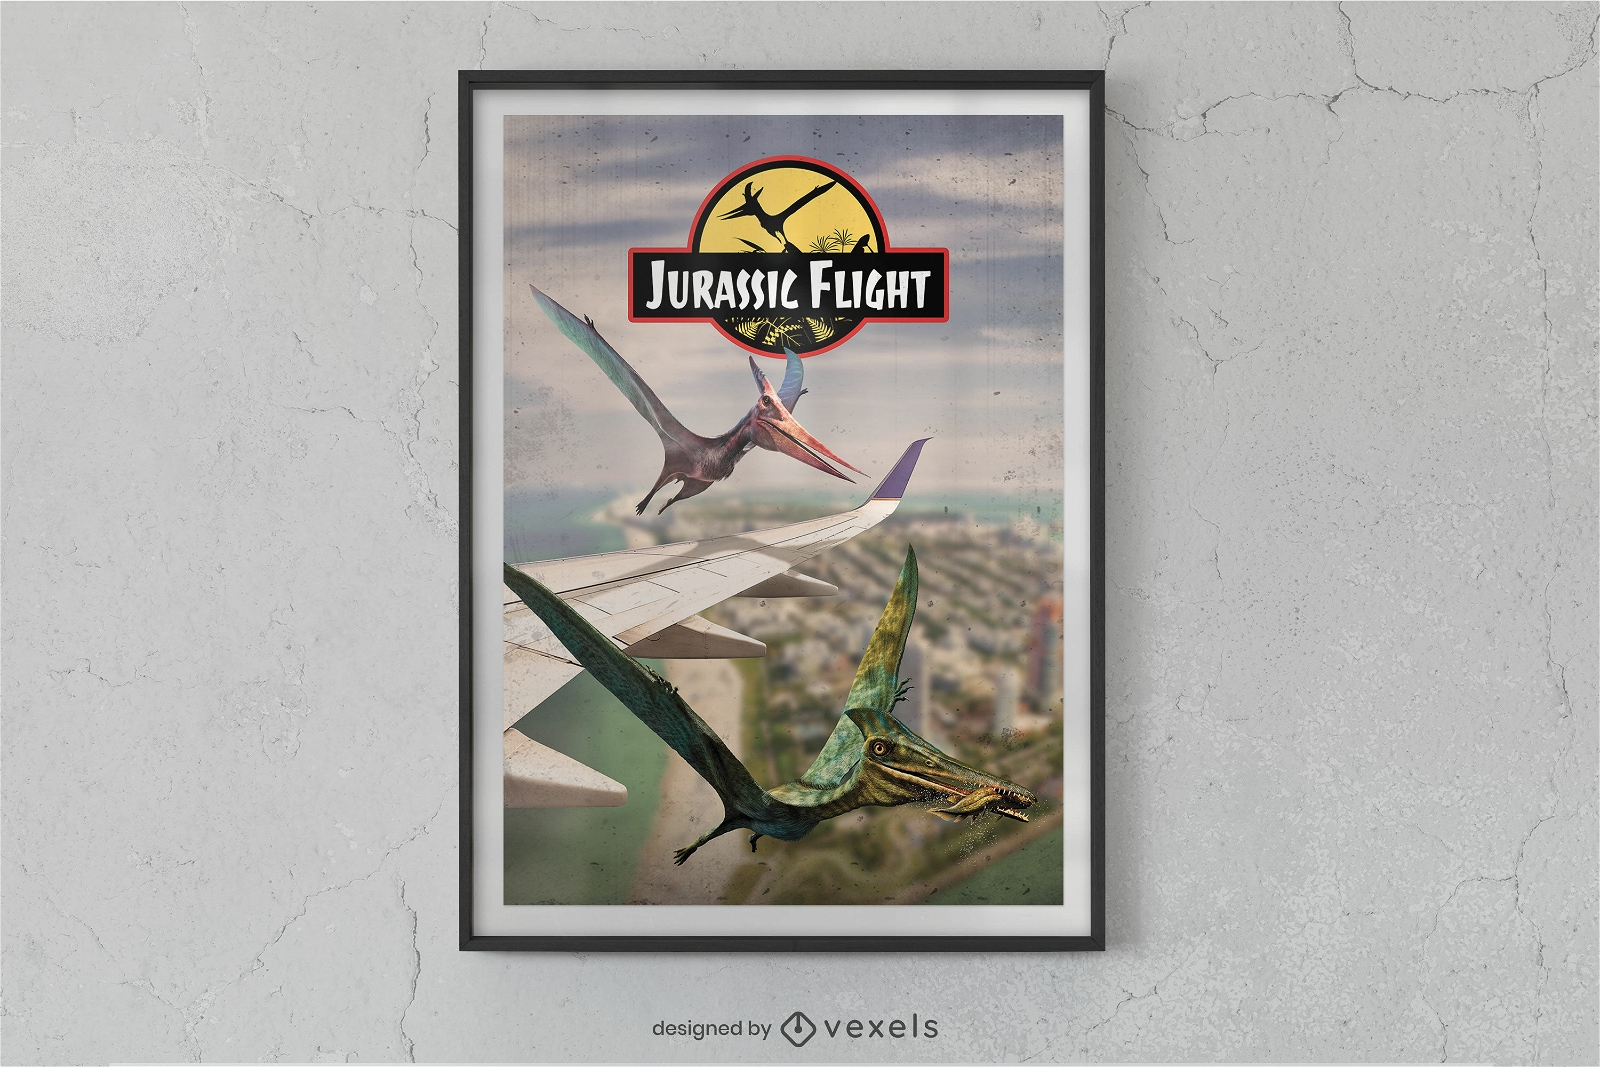 Jurassic flight dinosaurs poster design